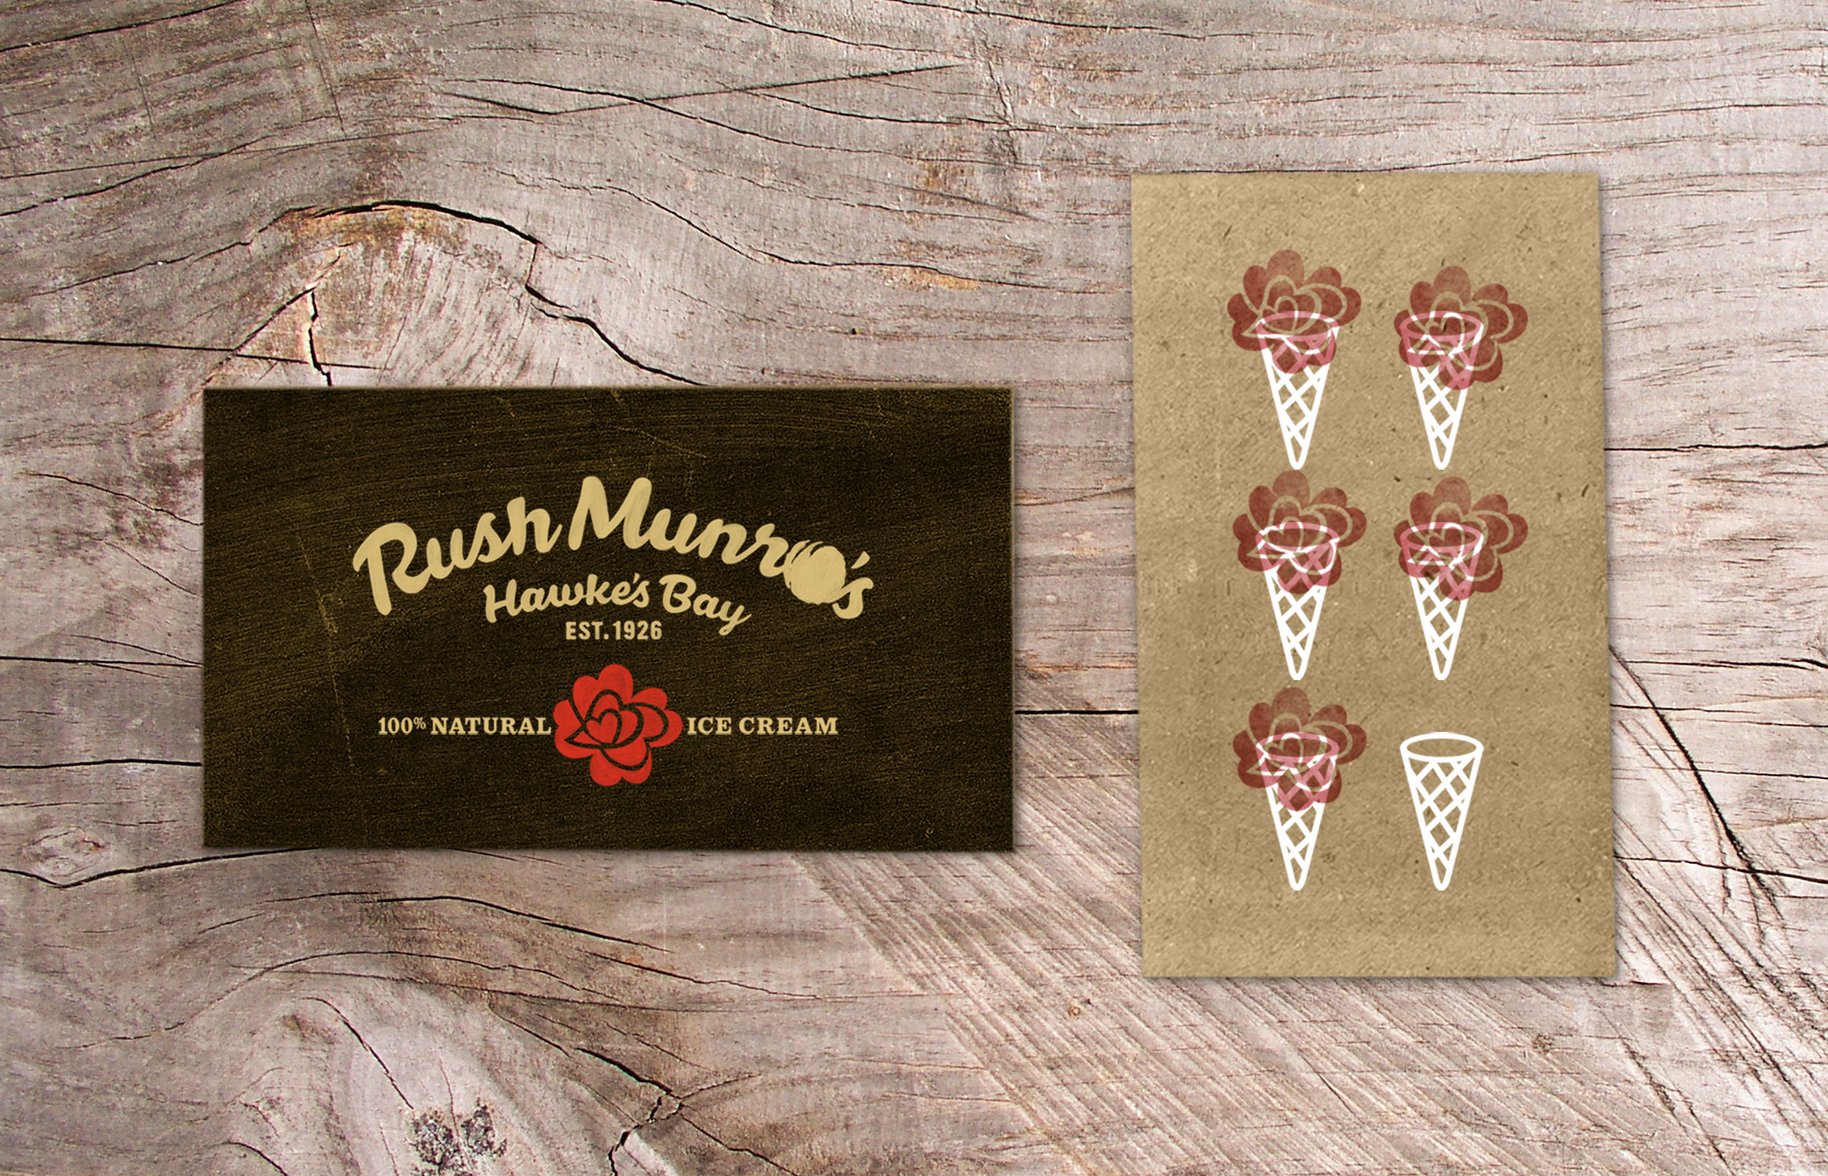 Rush Munro's ice cream loyalty card